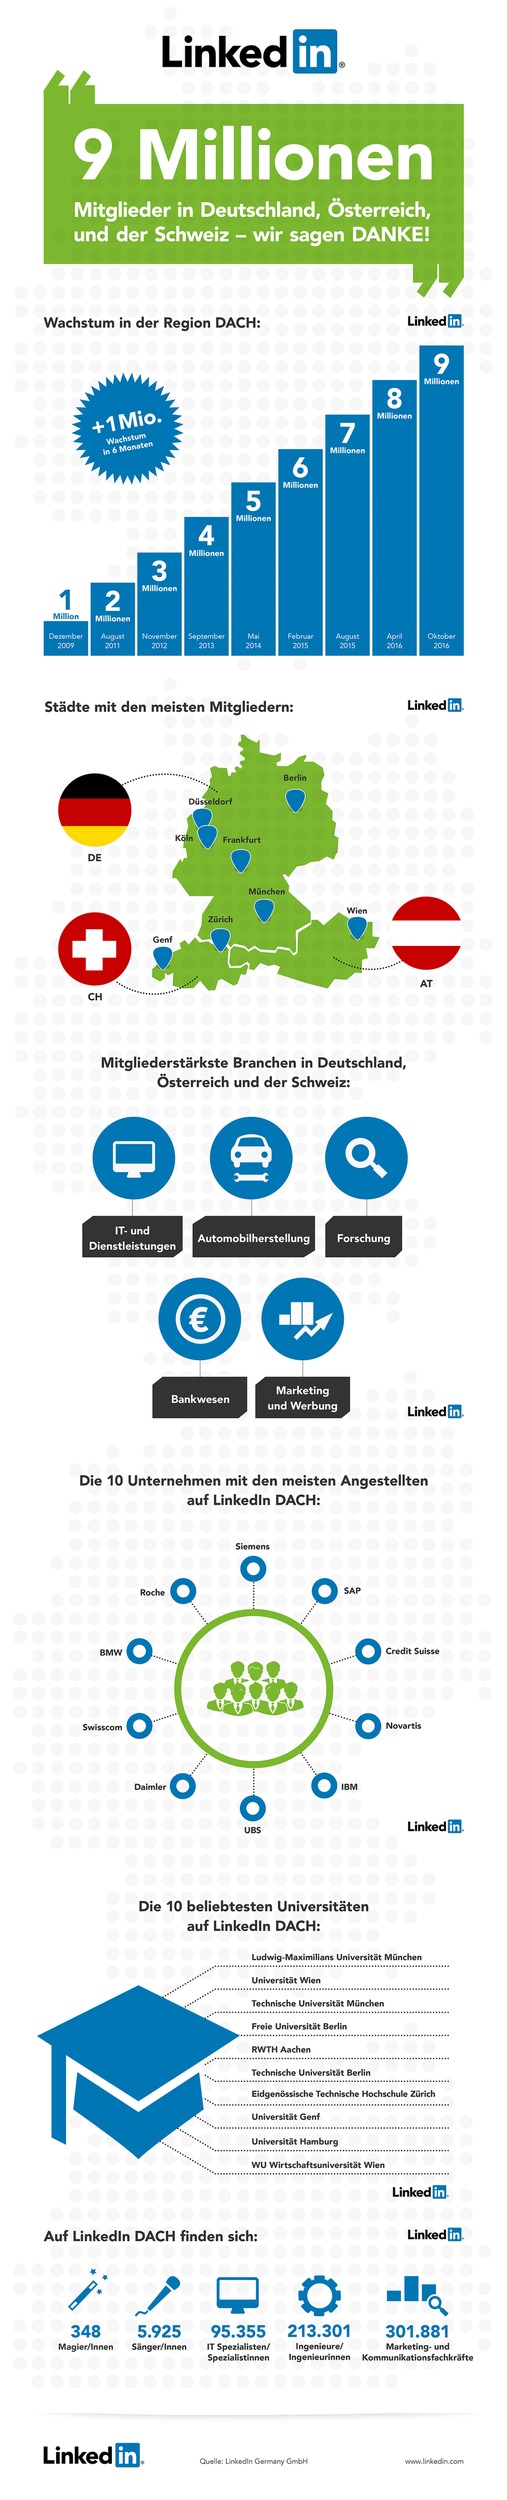 LinkedIn erreicht neun Millionen Mitglieder in Deutschland, Österreich und der Schweiz